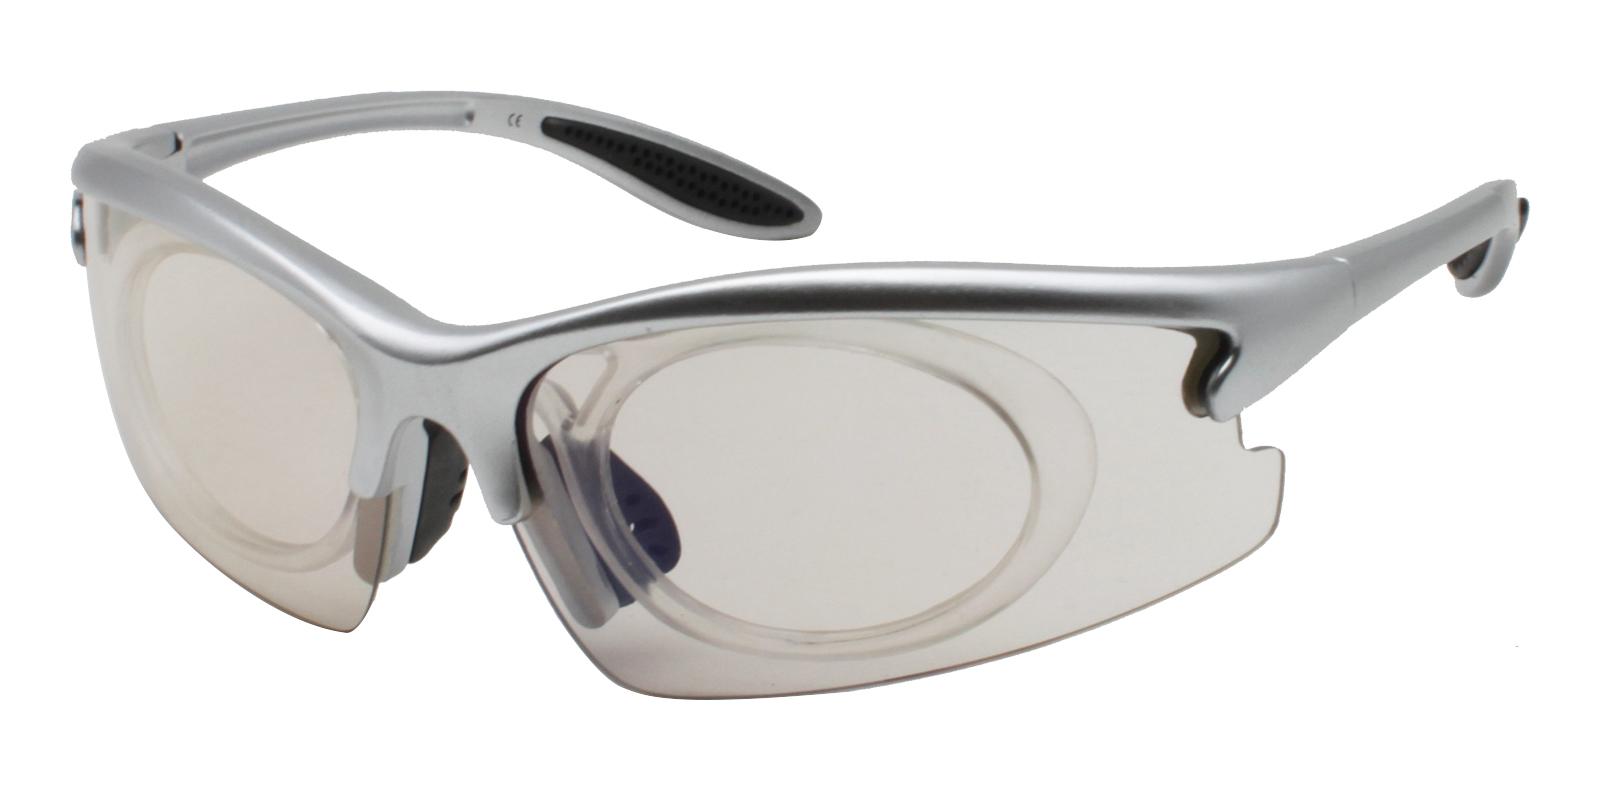 Jonesboro Silver Plastic NosePads , SportsGlasses Frames from ABBE Glasses